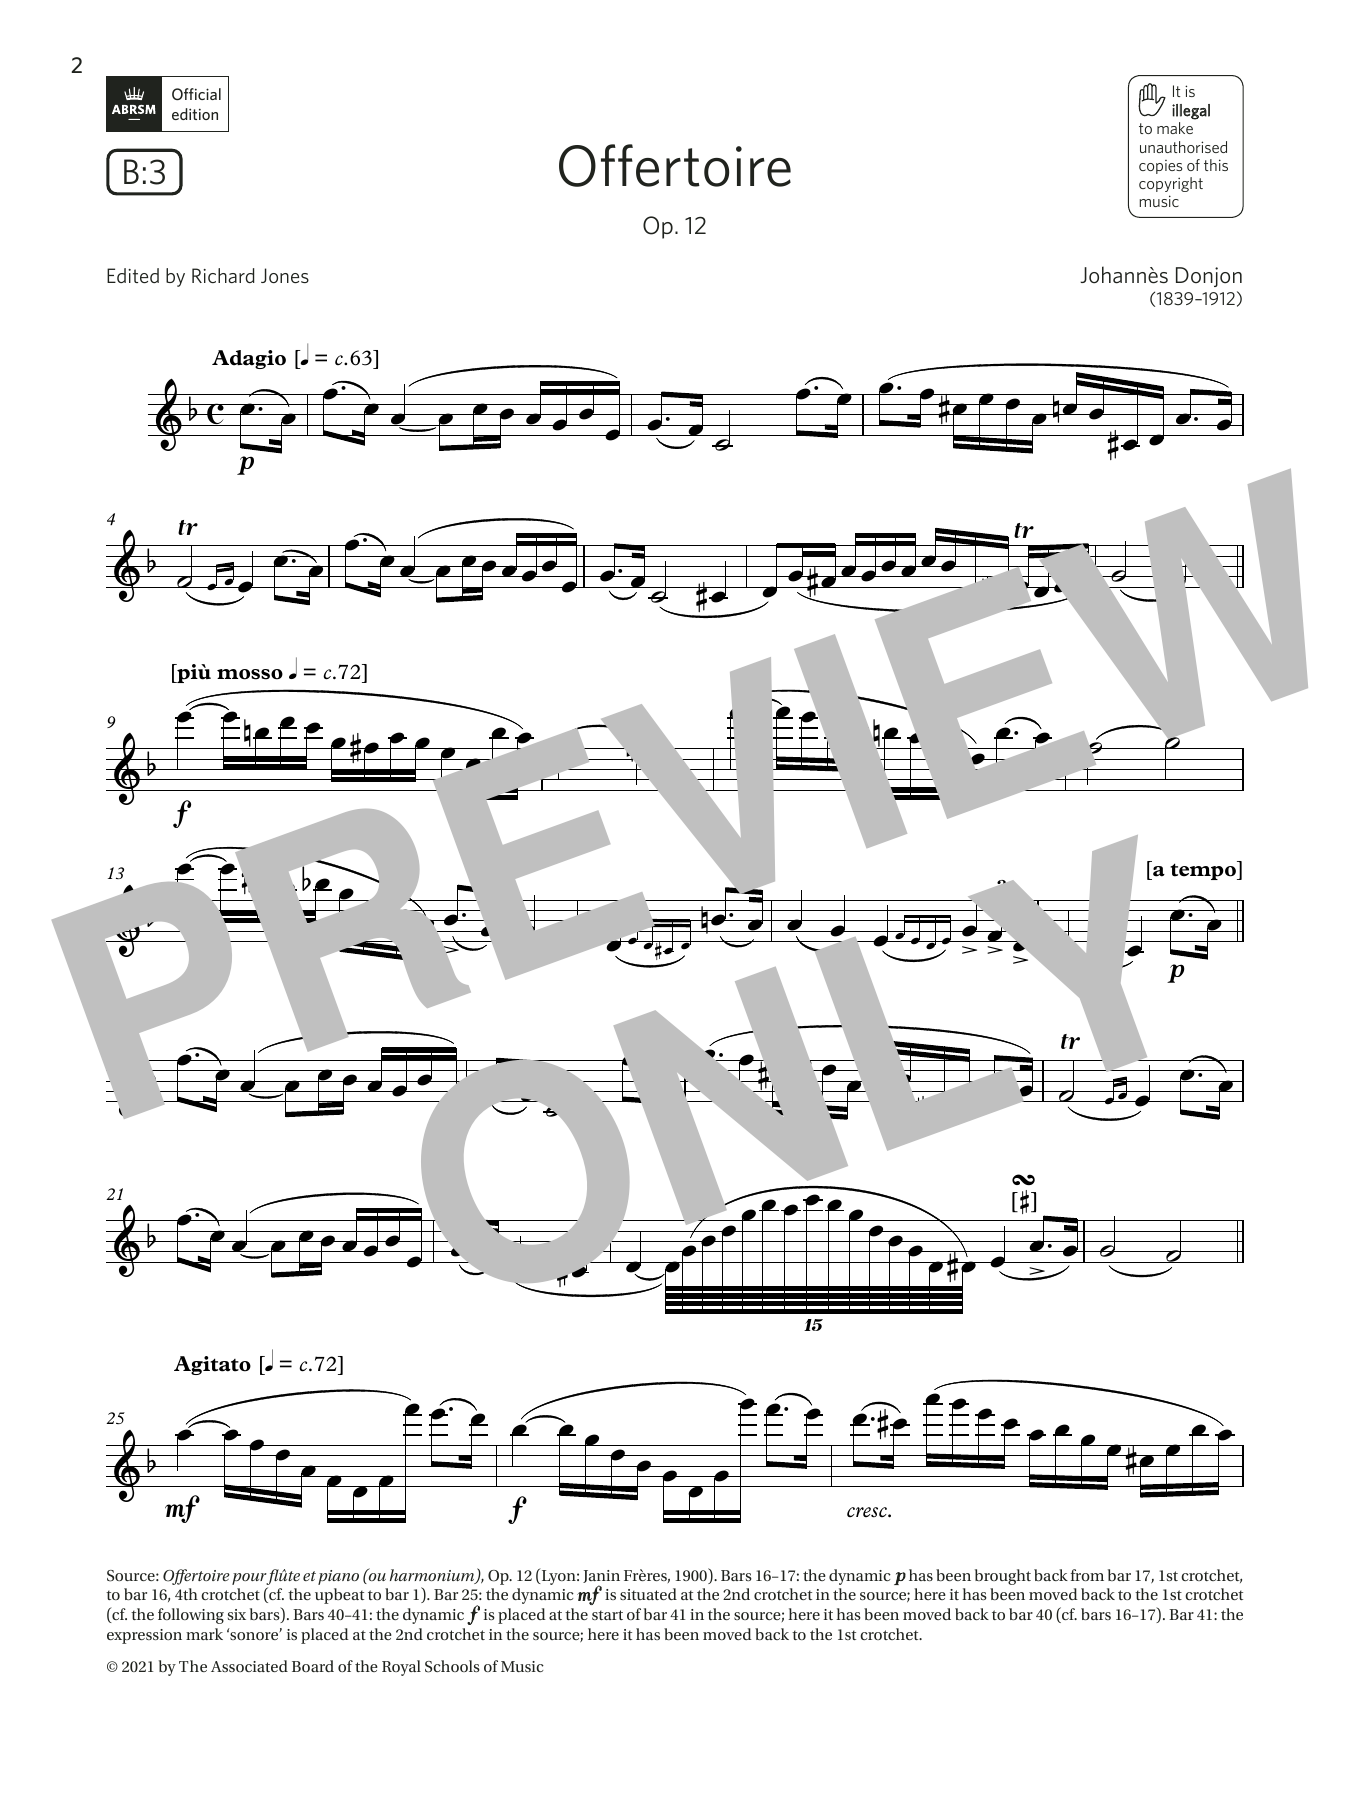 Download Johannes Donjon Offertoire, Op. 12 (Grade 7 List B3 fro Sheet Music